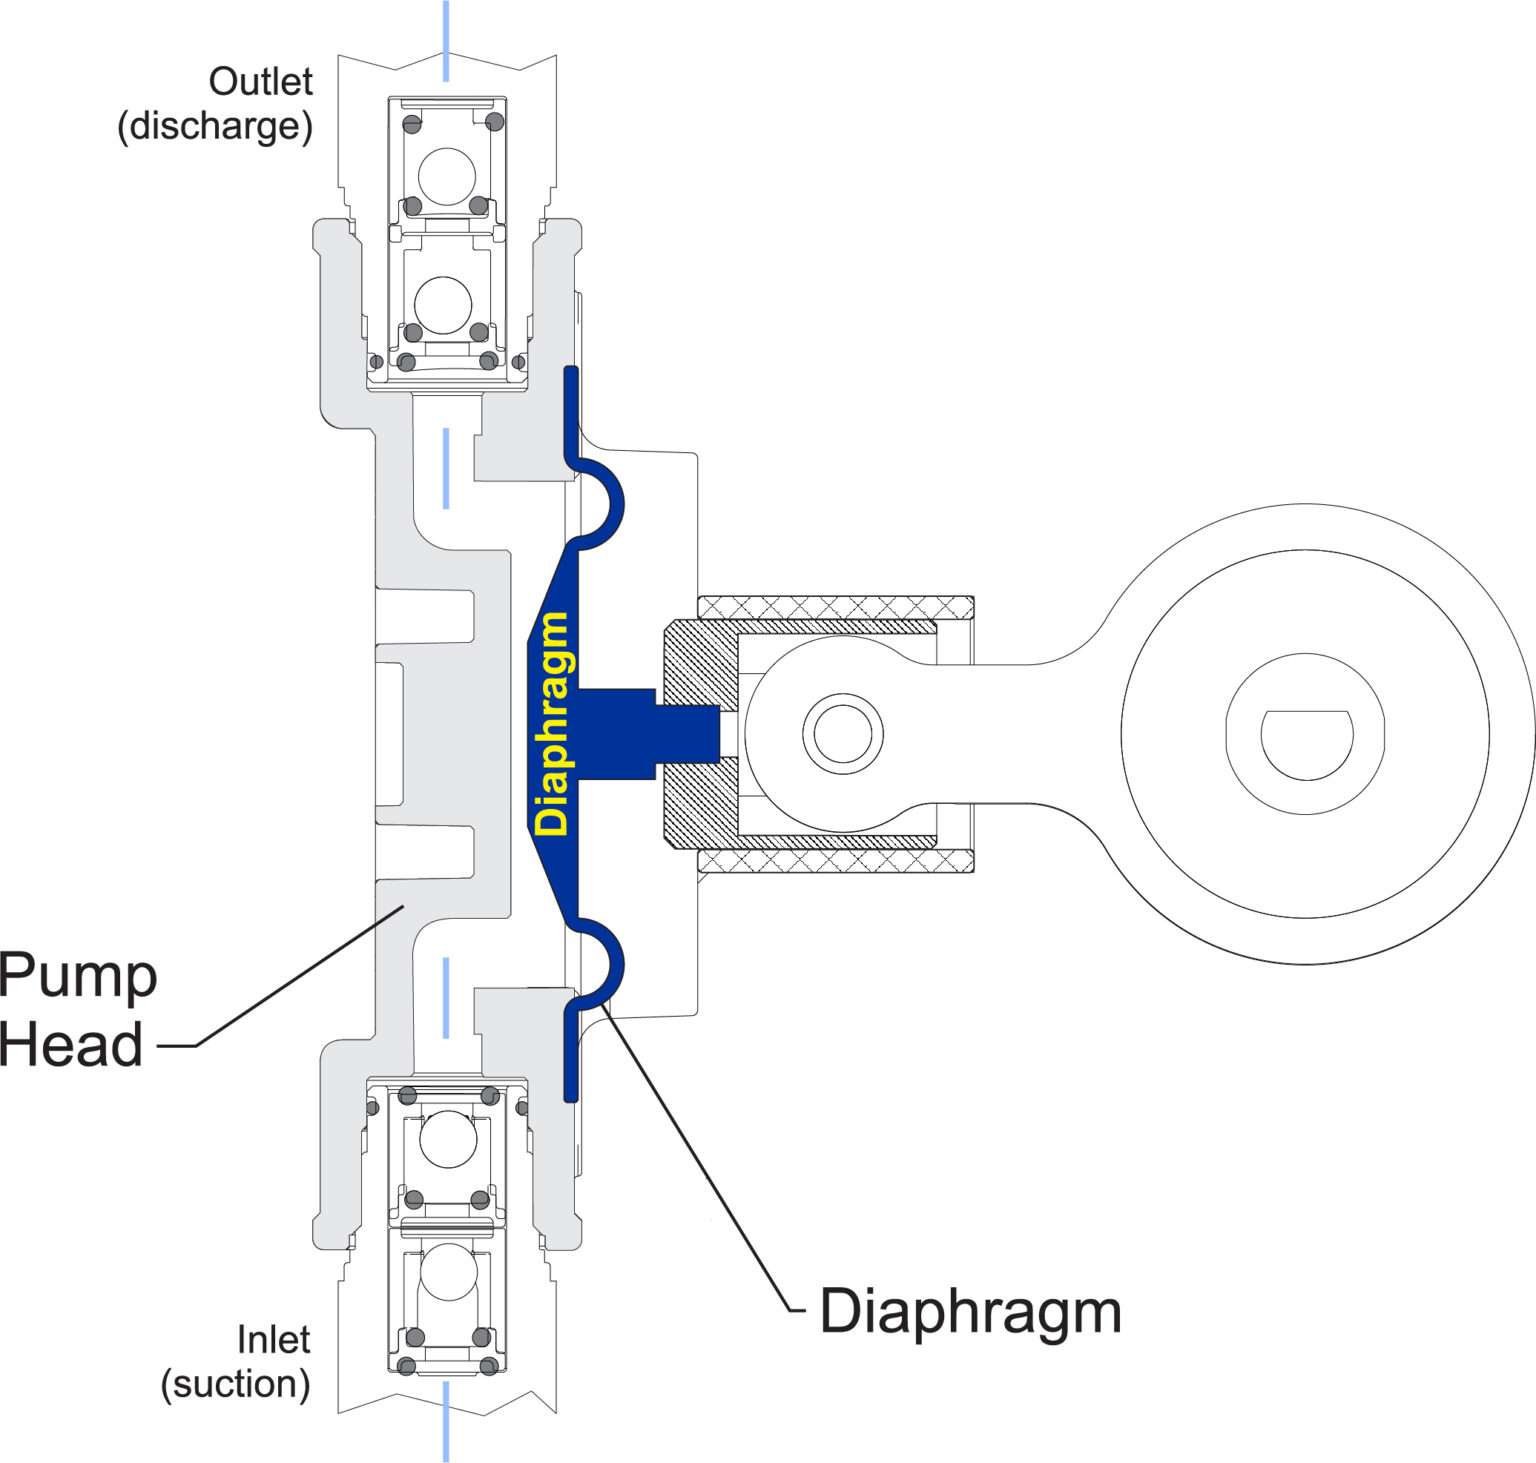 Diagramme de principe de fonctionnement de la pompe à membrane